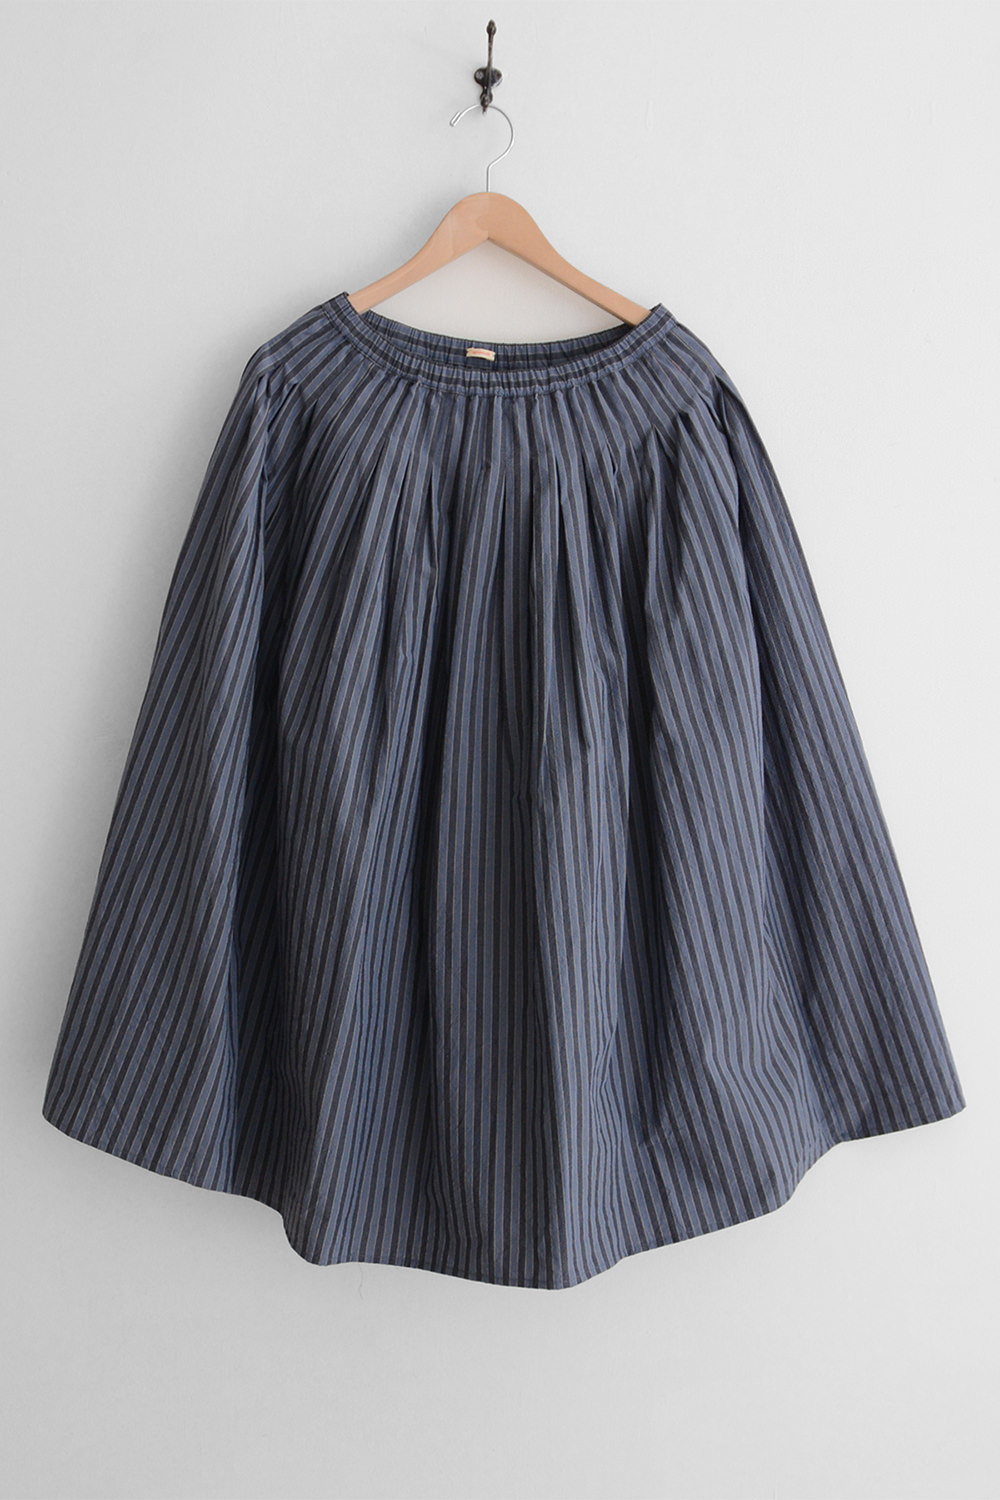 apuntob cotton skirt ash blue stripe top picture